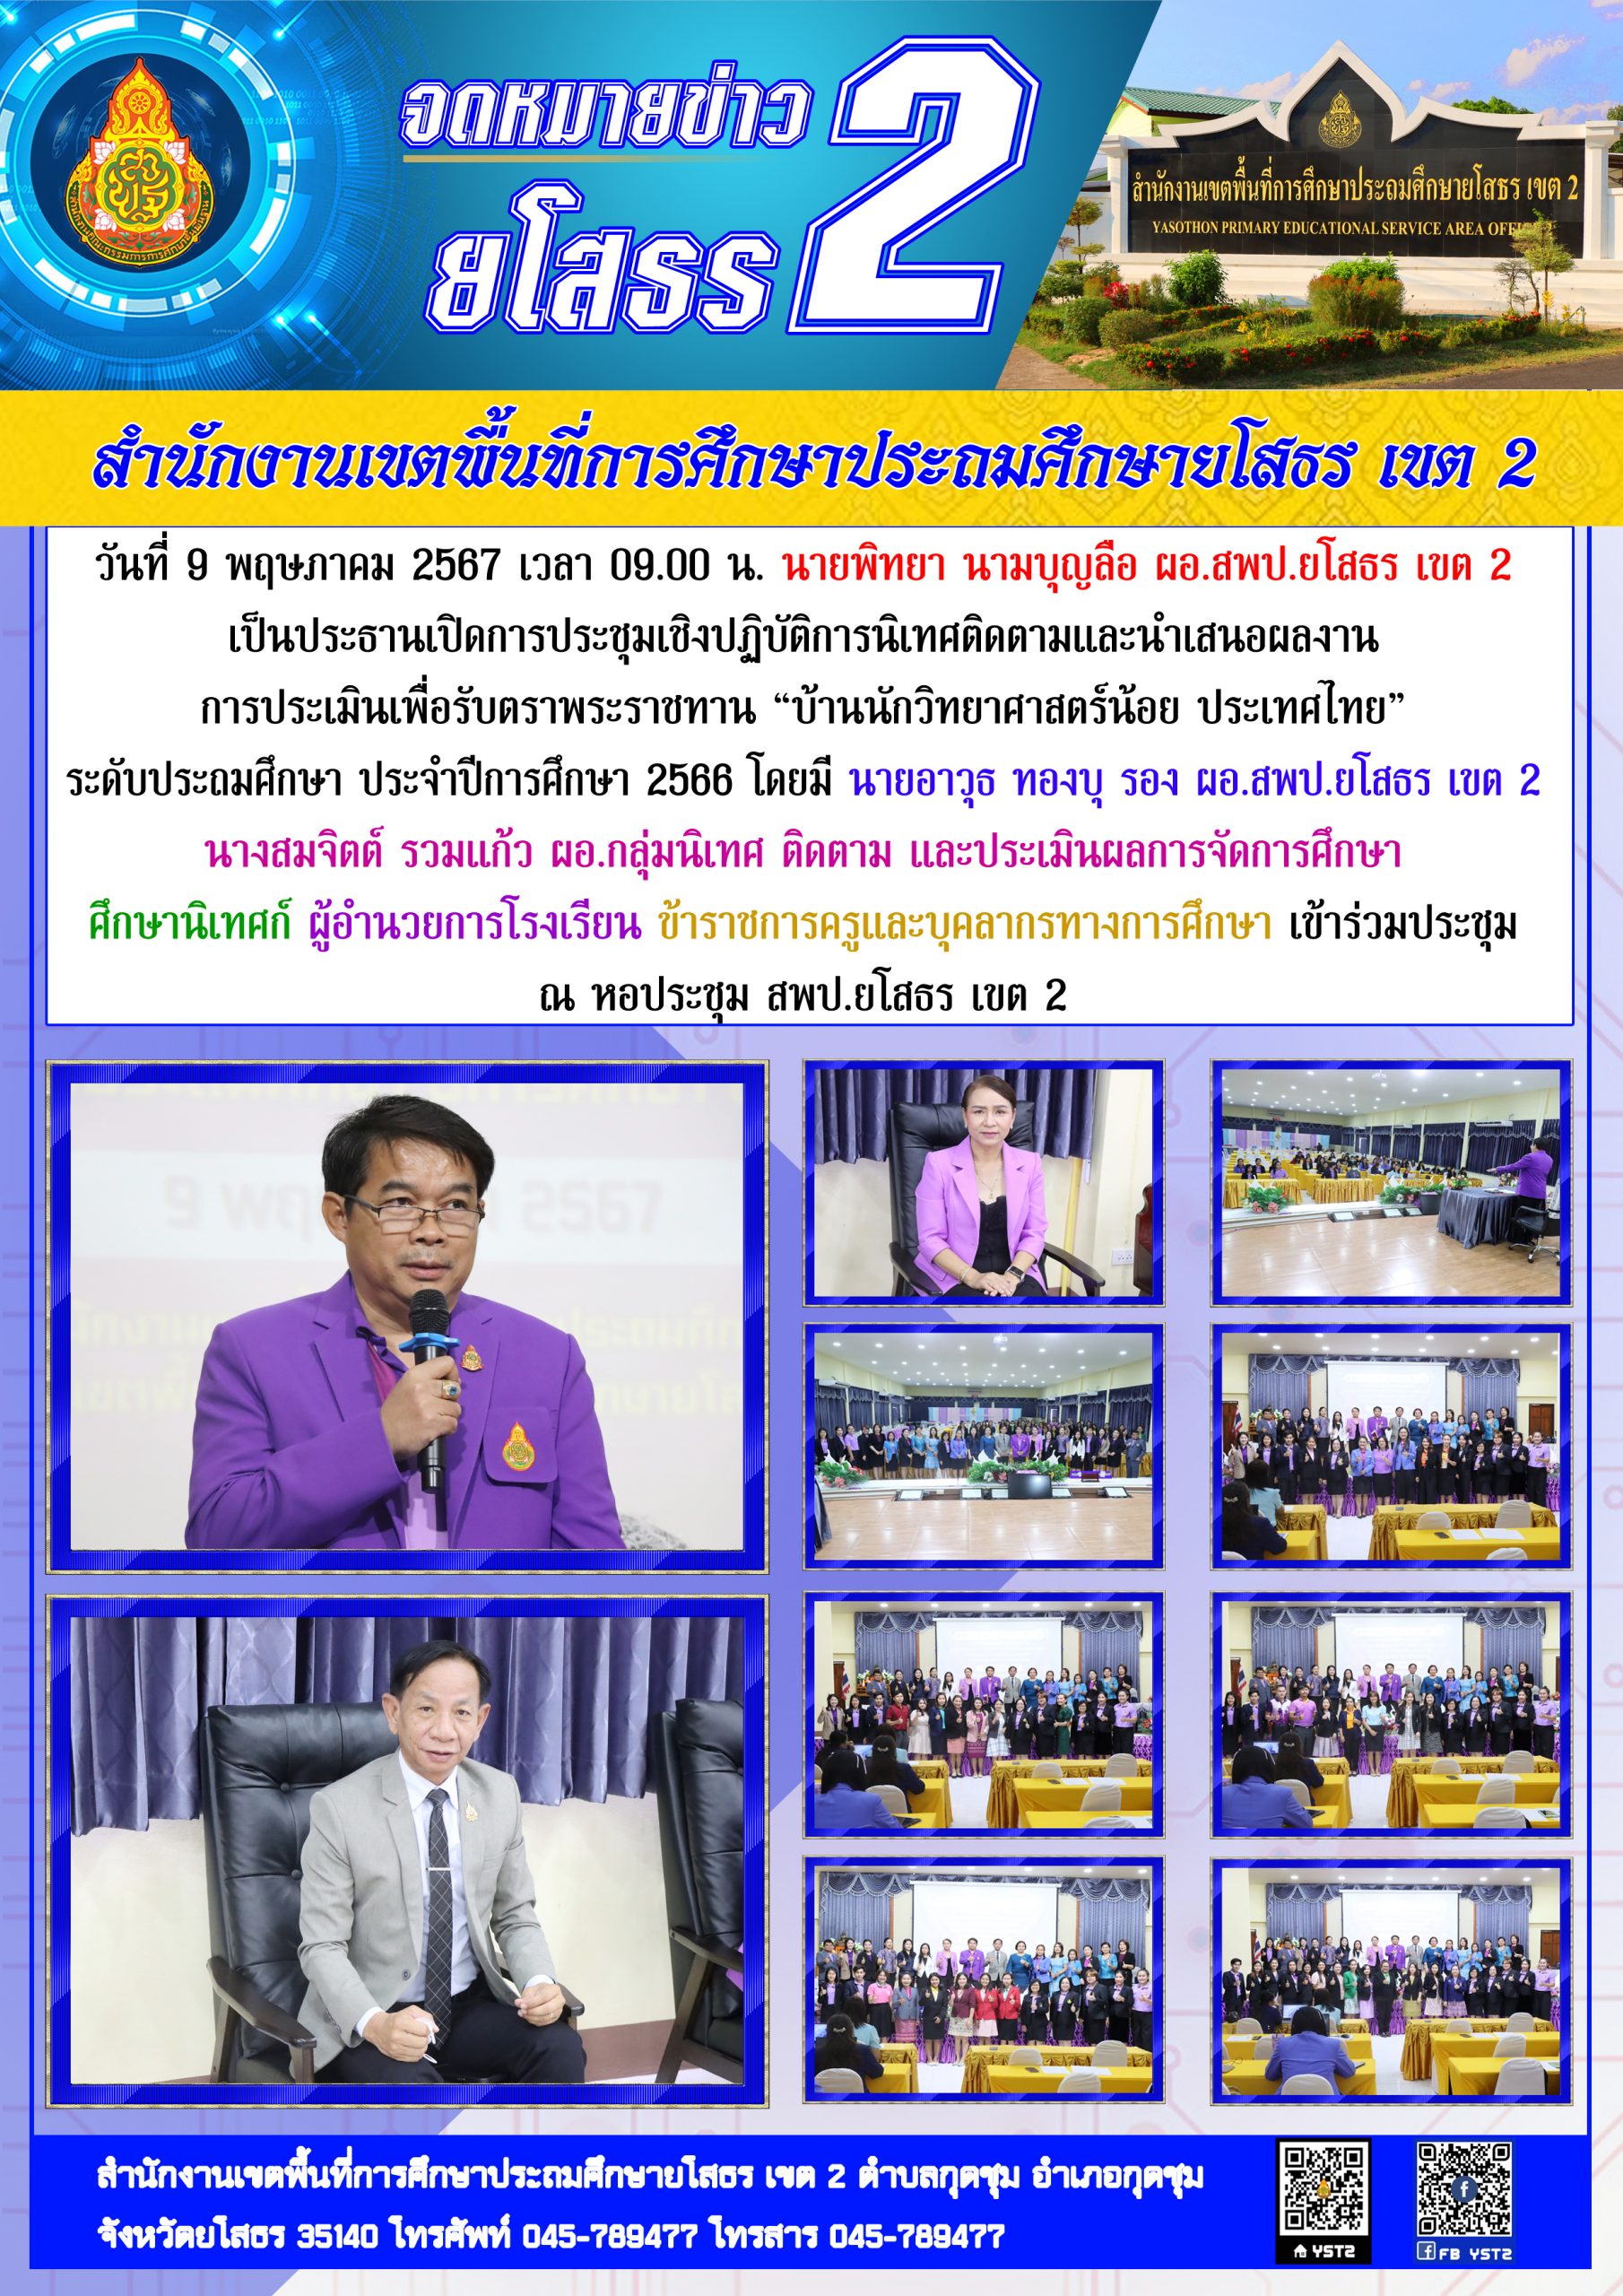 สพป.ยโสธร เขต 2 จัดประชุมเชิงปฏิบัติการนิเทศติดตามและนำเสนอผลงาน การประเมินเพื่อรับตราพระราชทาน “บ้านนักวิทยาศาสตร์น้อย ประเทศไทย” ระดับประถมศึกษา ประจำปีการศึกษา 2566